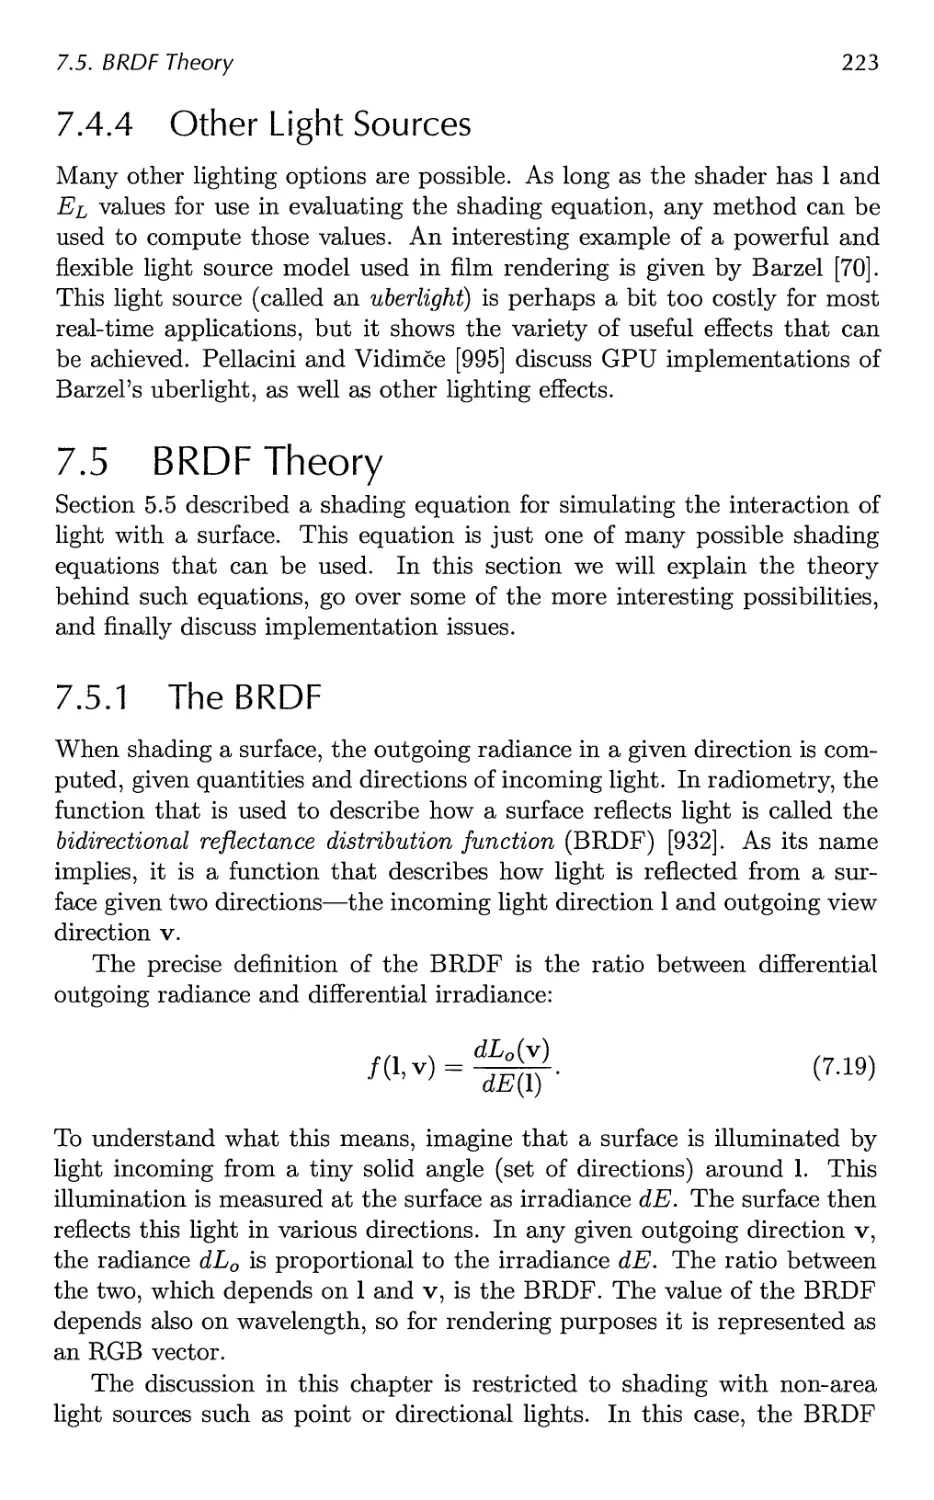 7.5 BRDF Theory